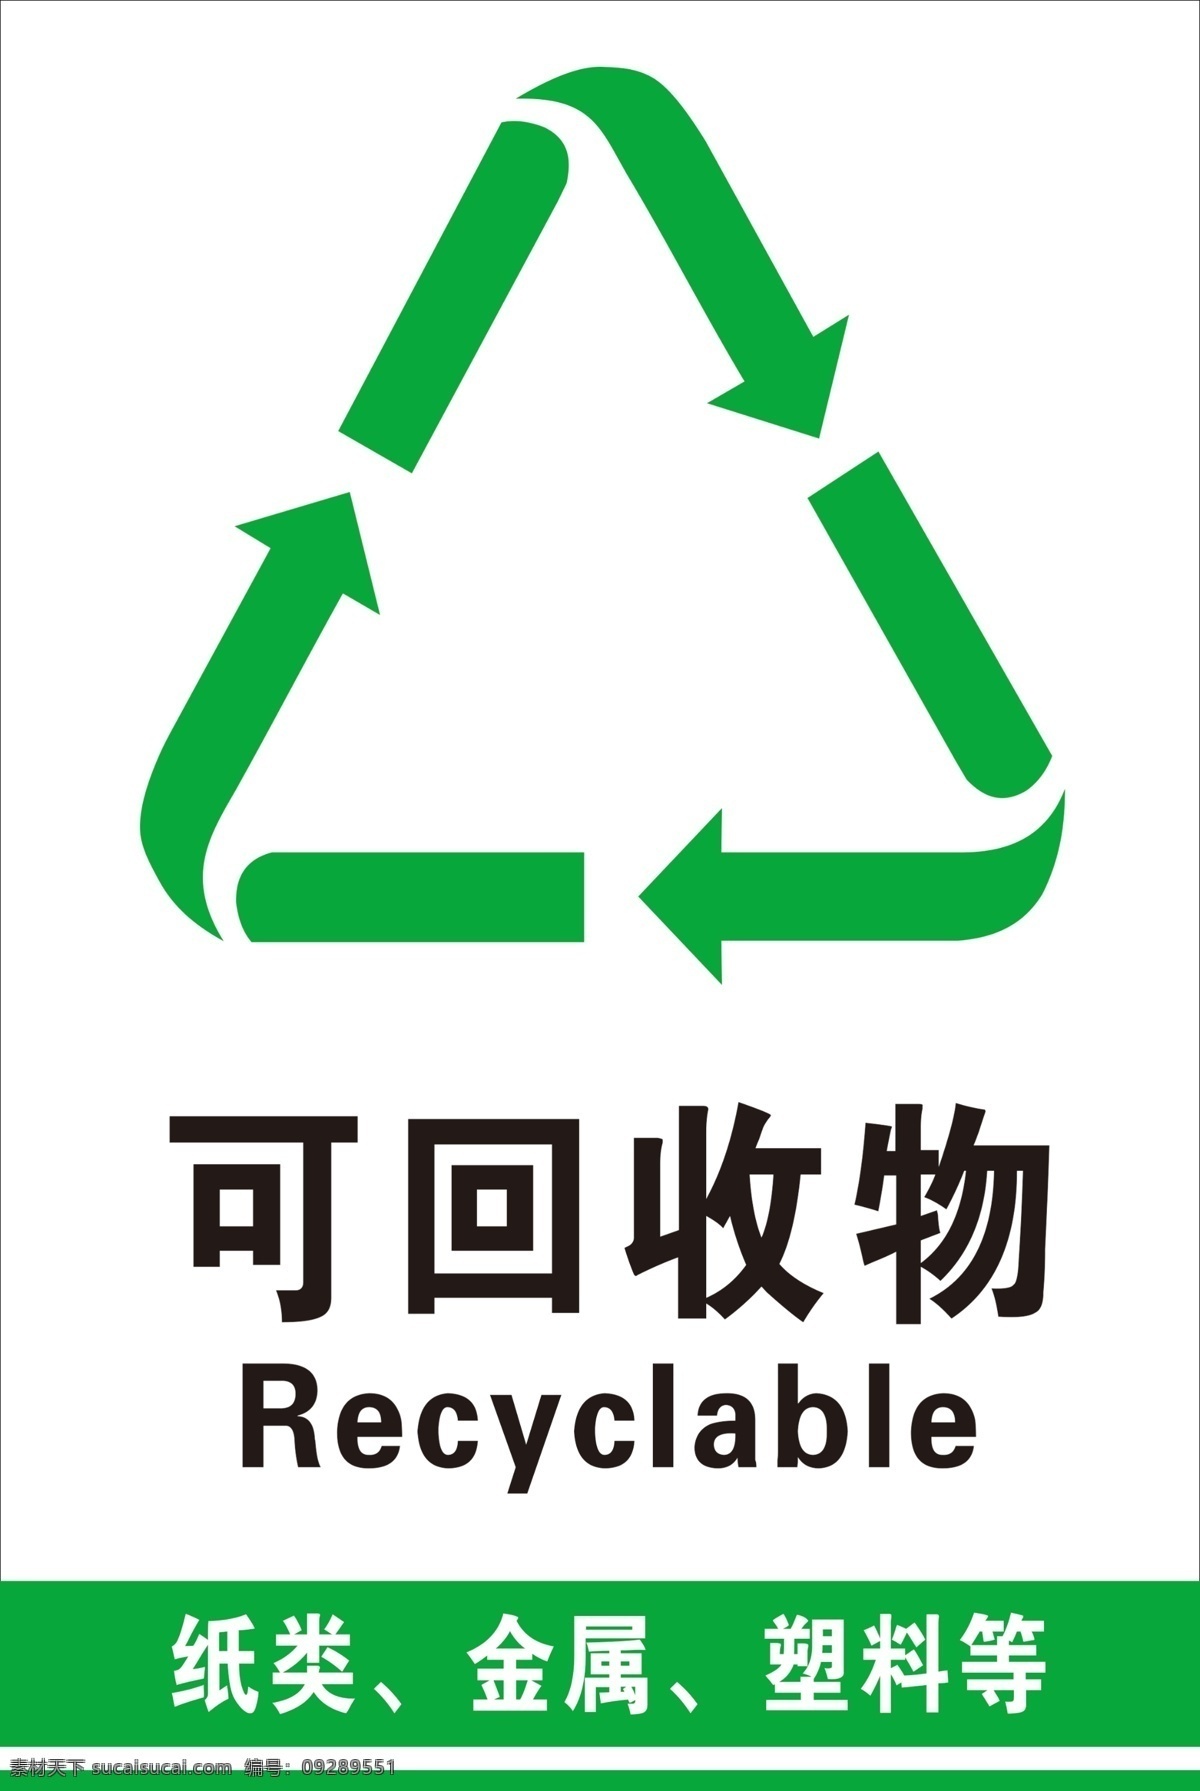 可回收 不可回收图片 不可回收 垃圾 标志 回收 分层